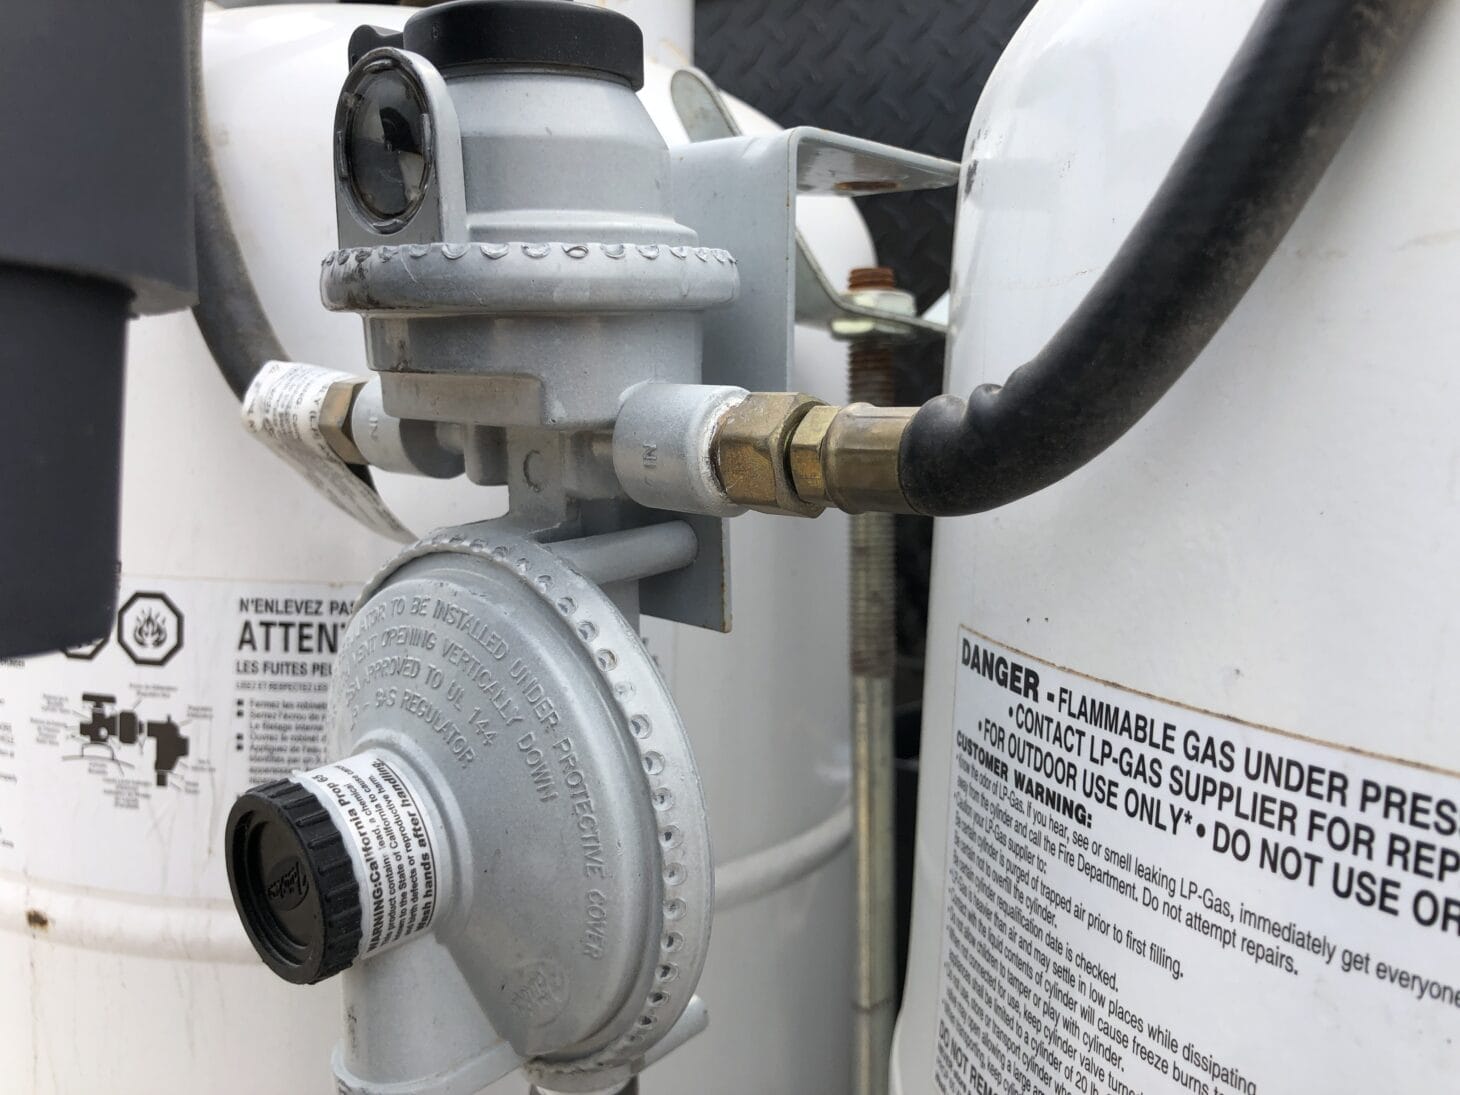 Close up image of an LP tank's regulator